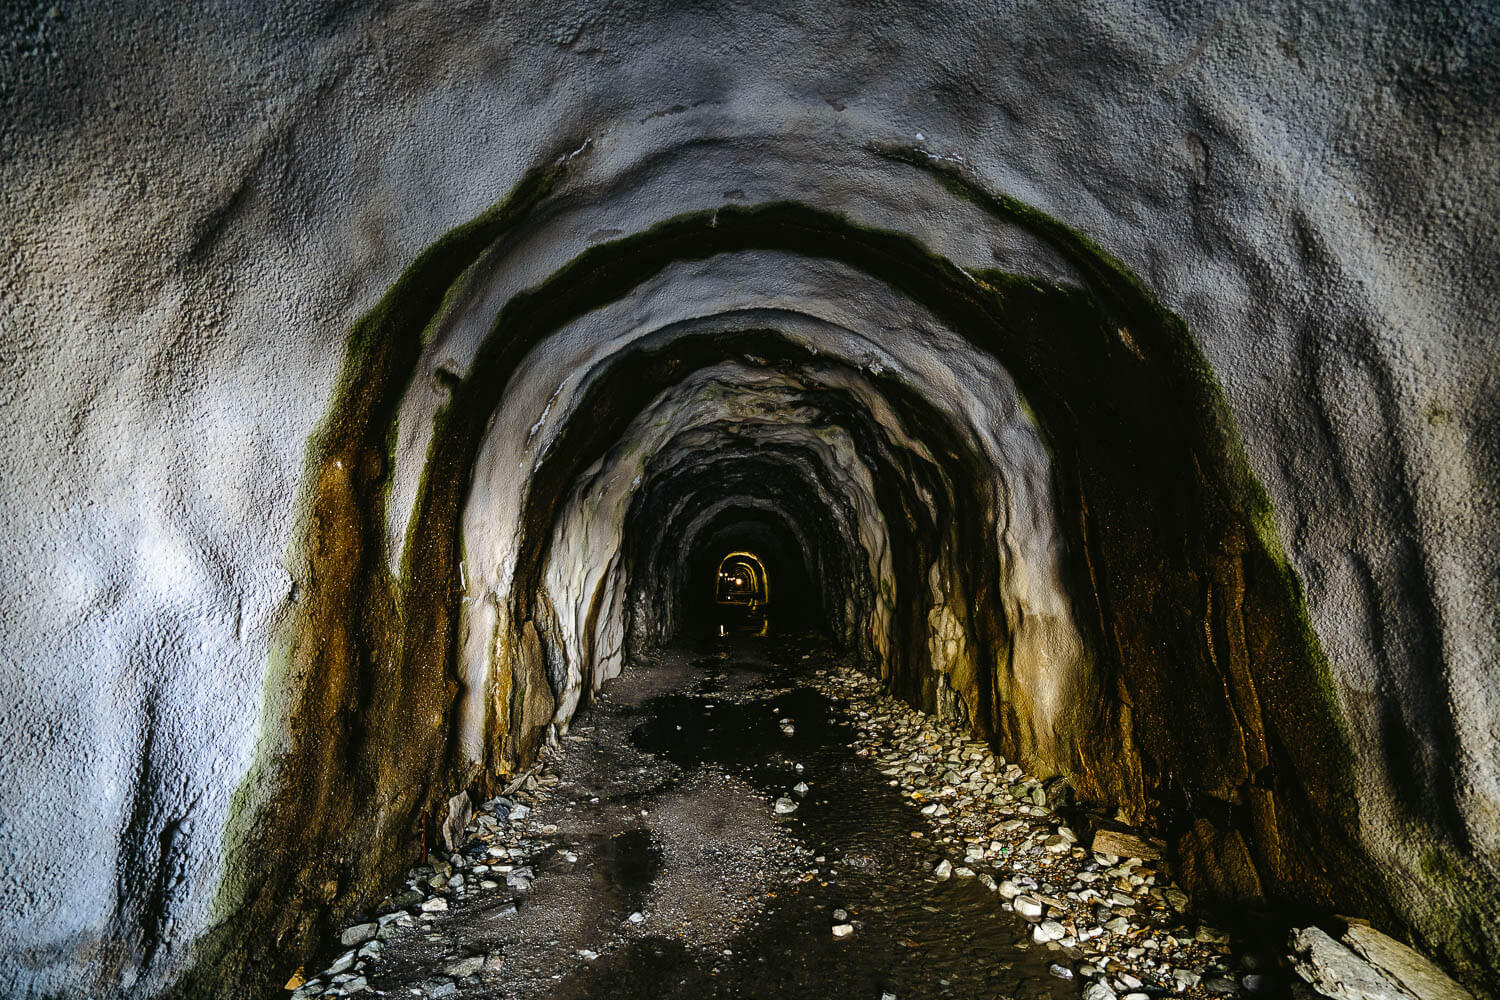 The Tälligrattunnel